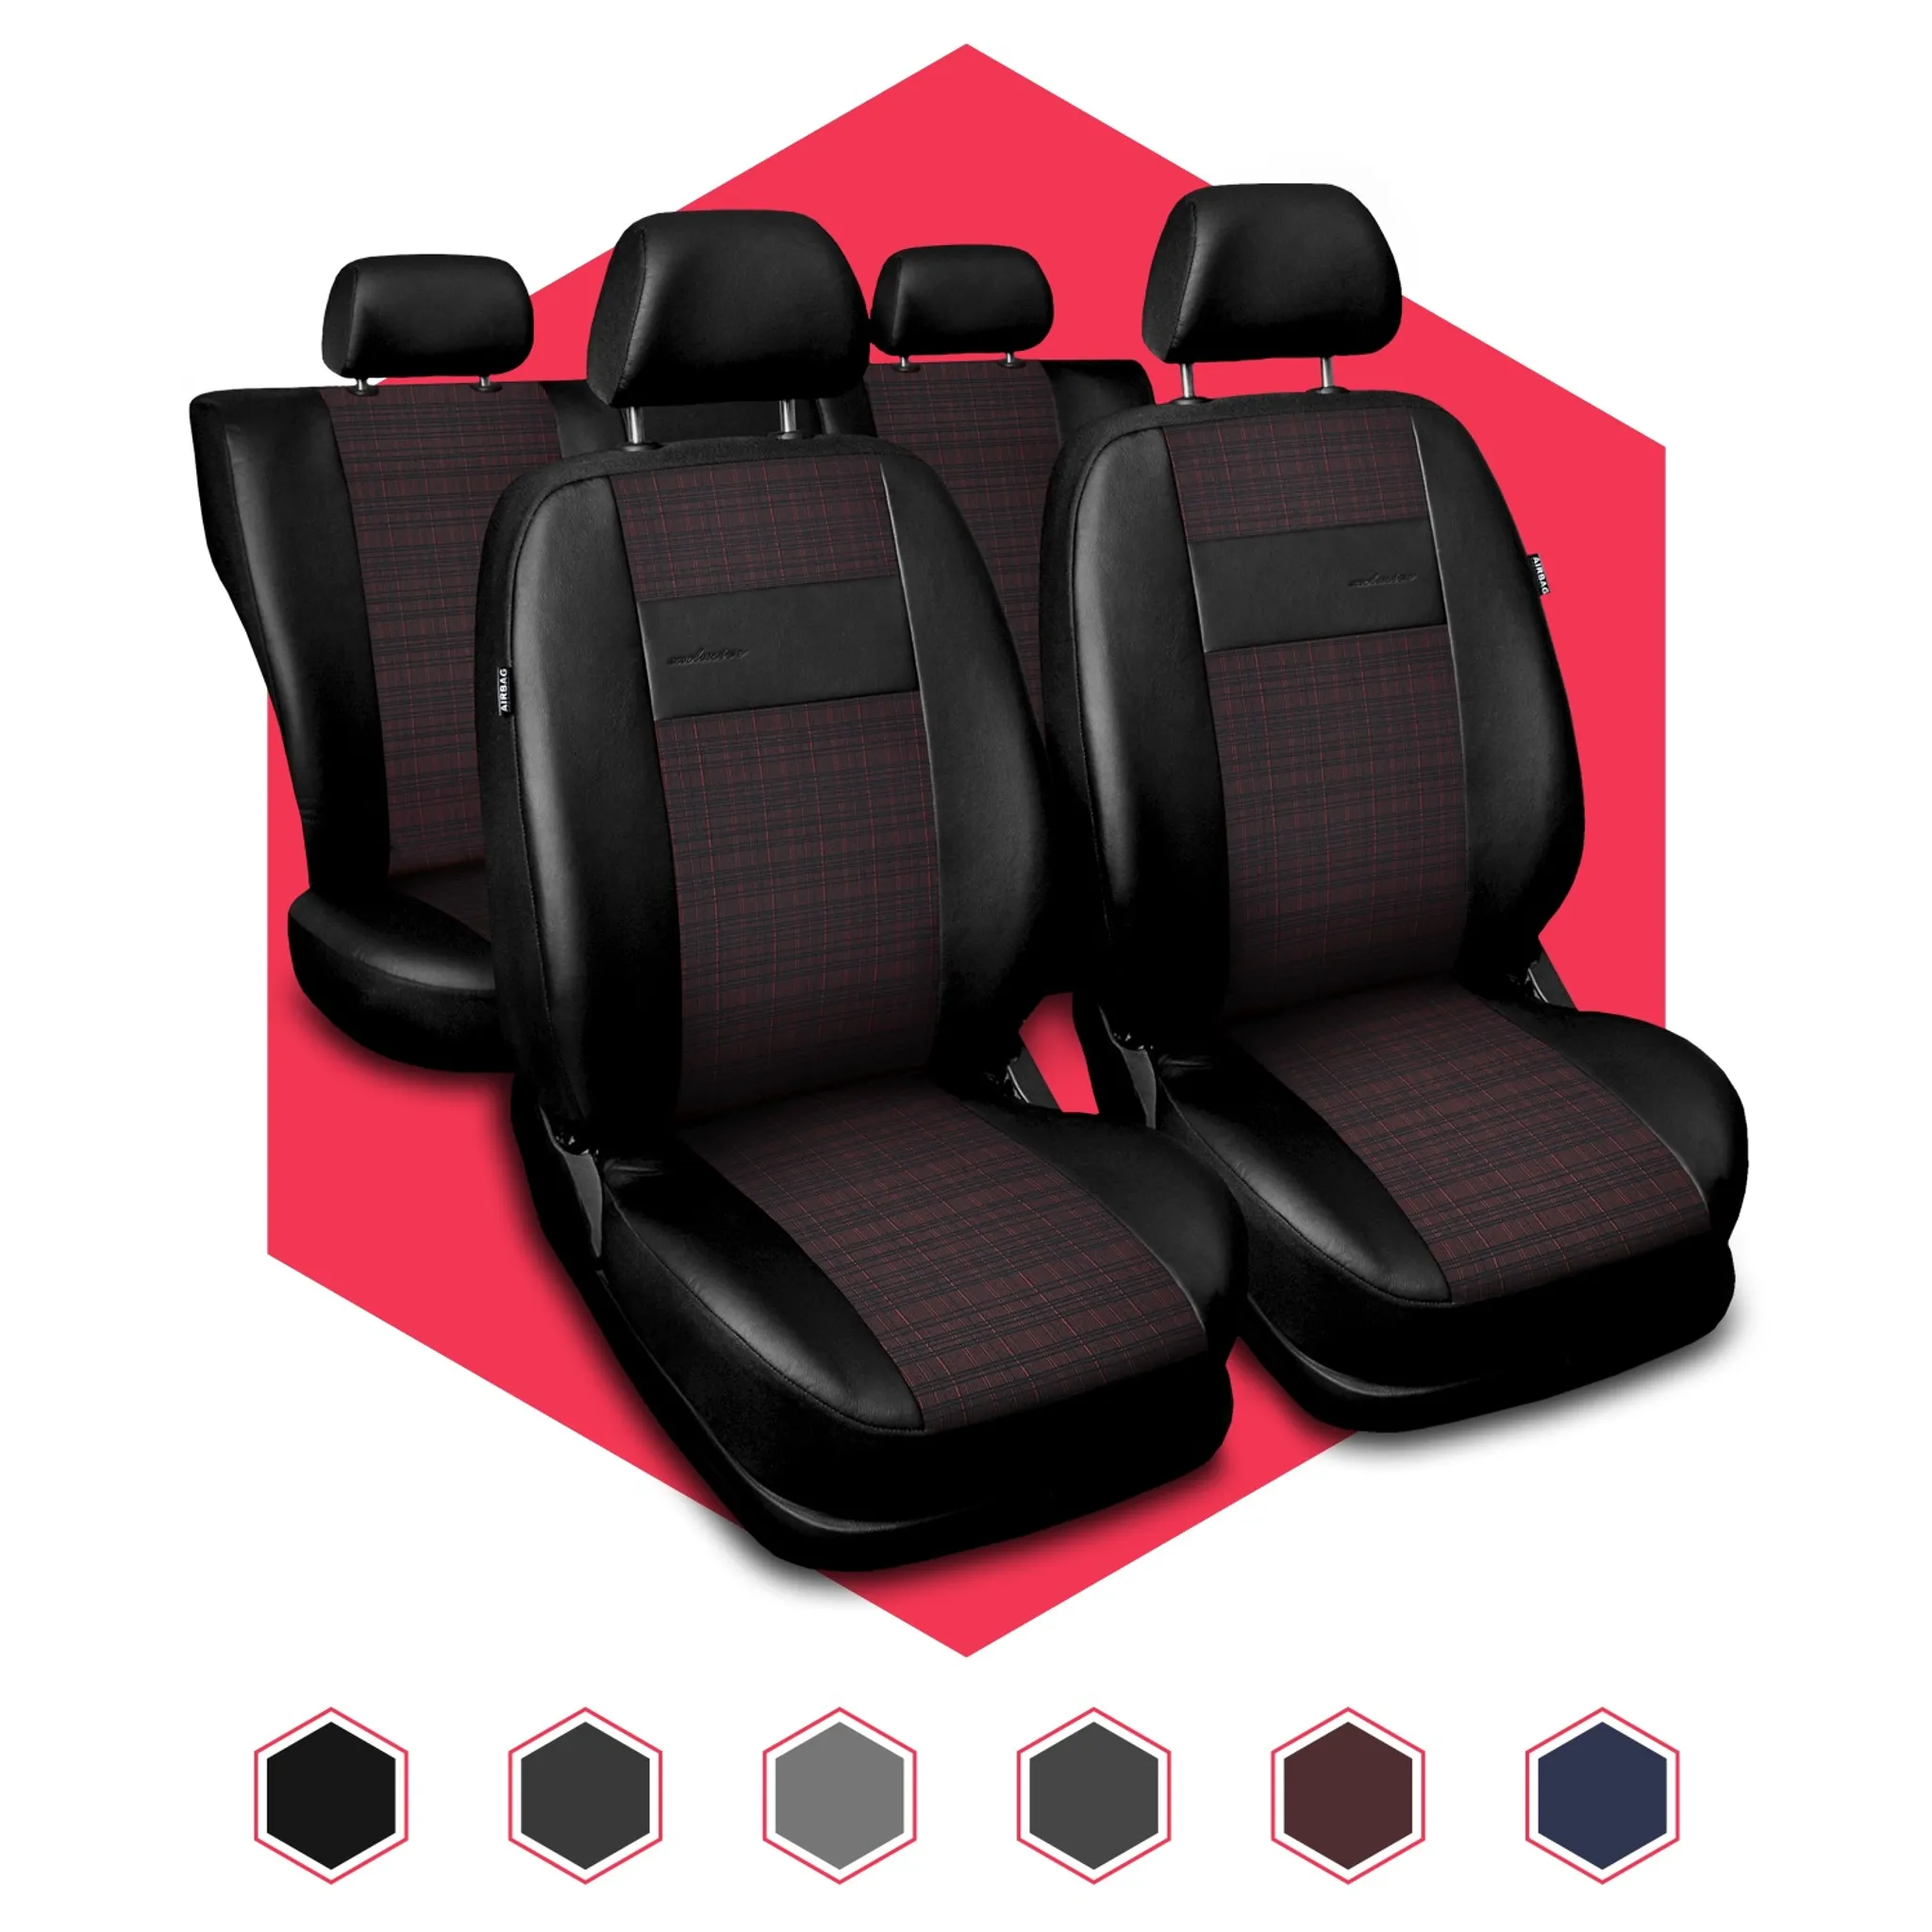 Kunstleder Autositzbezug-Set 5 Sitzbezüge Universal Auto Sitzbezug